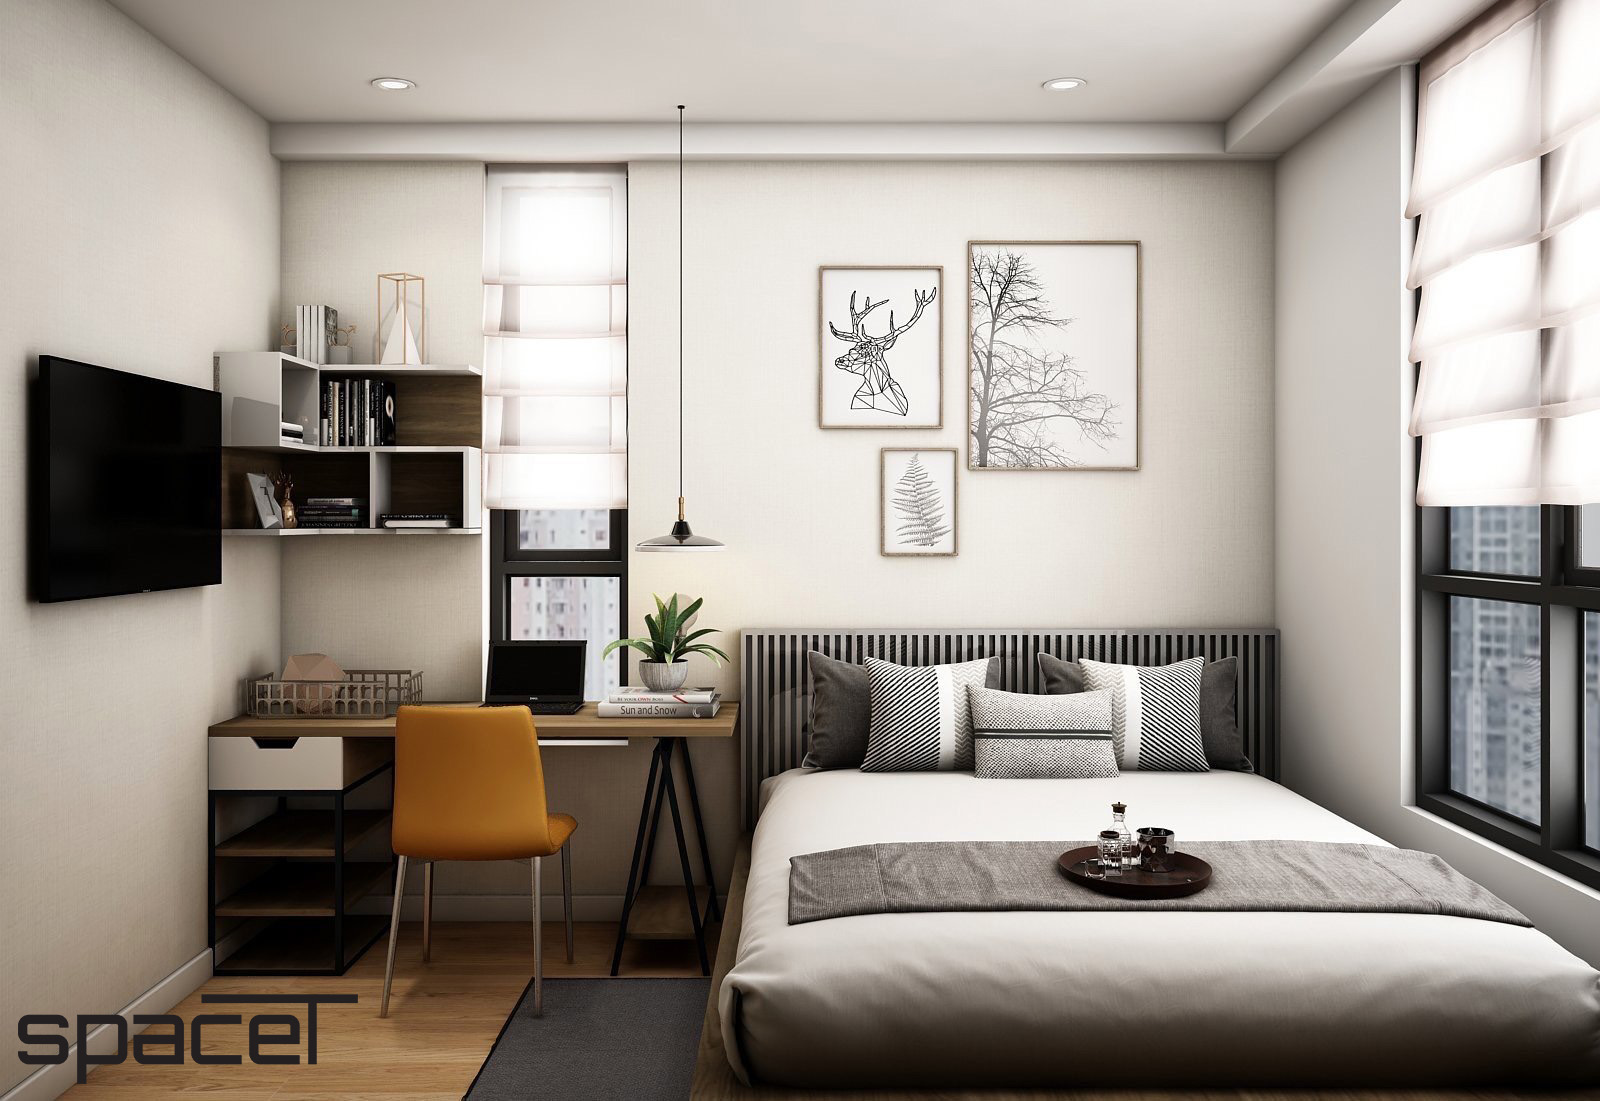 Phòng ngủ, phong cách Bắc Âu Scandinavian, phong cách Hiện đại Modern, thiết kế concept nội thất, căn hộ Homyland 2